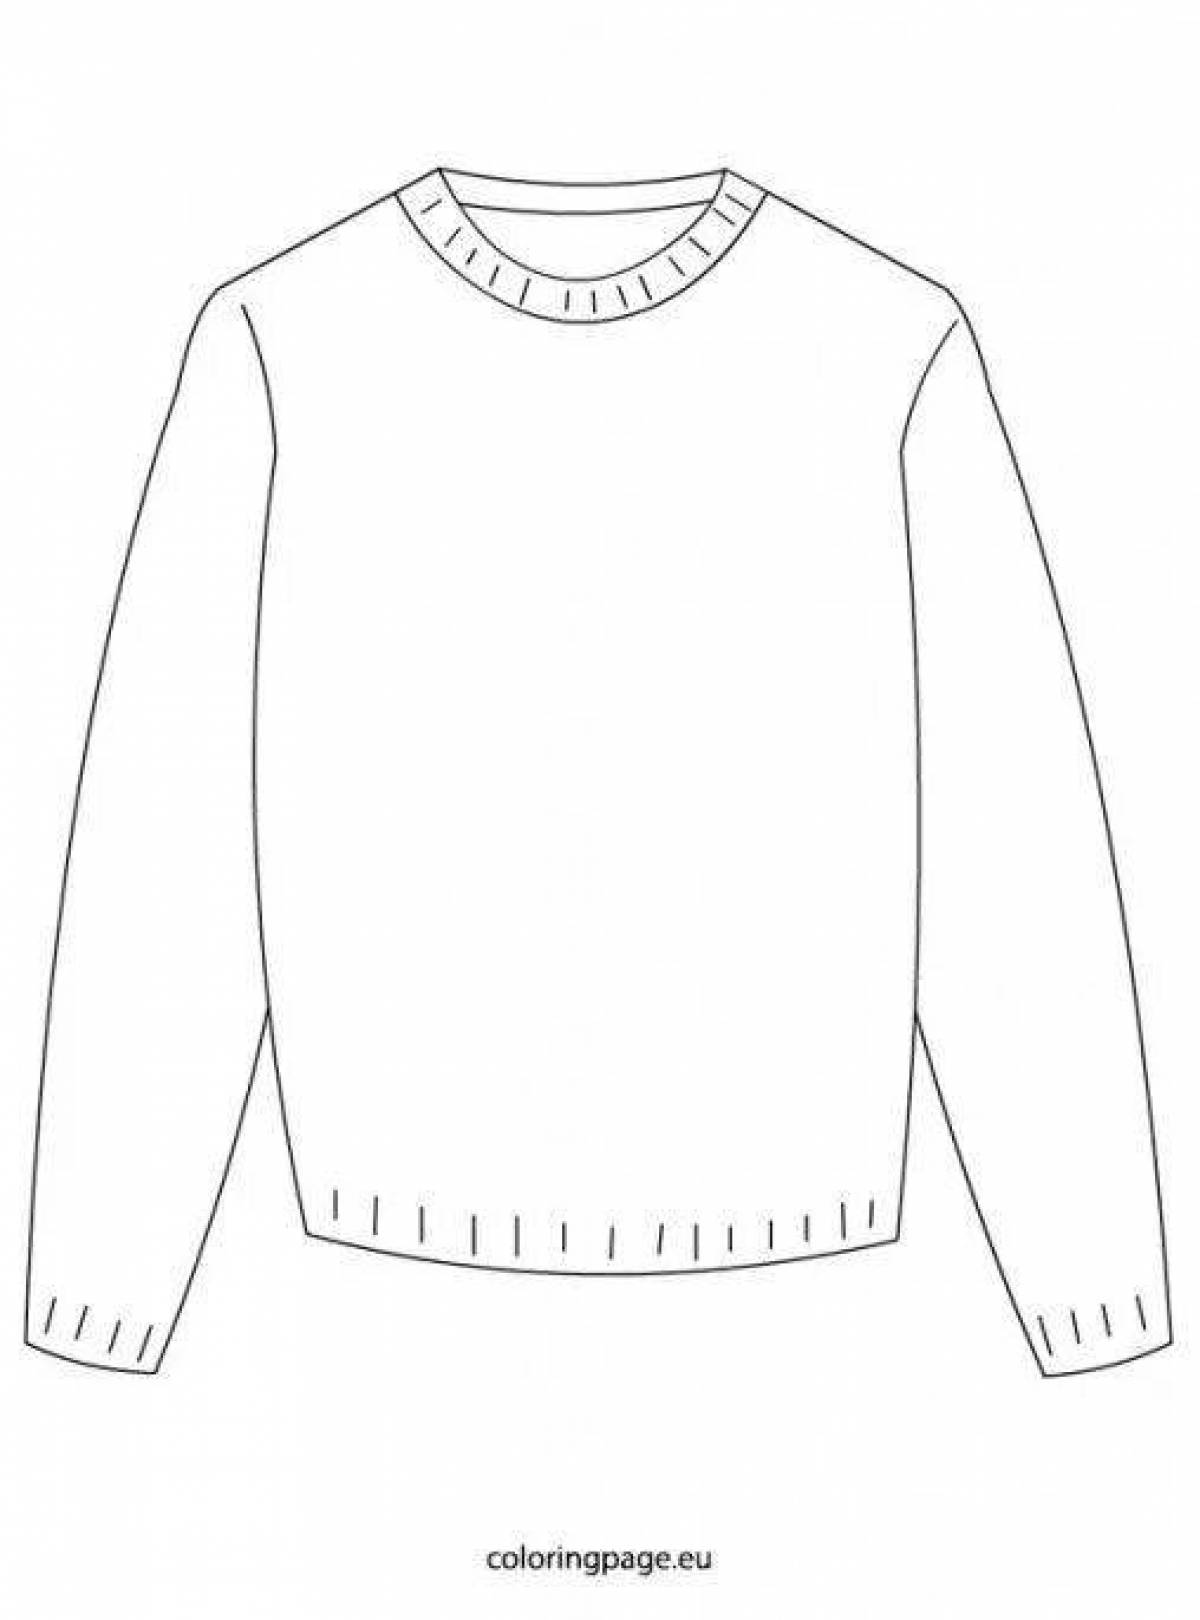 Трафарет свитера для раскрашивания